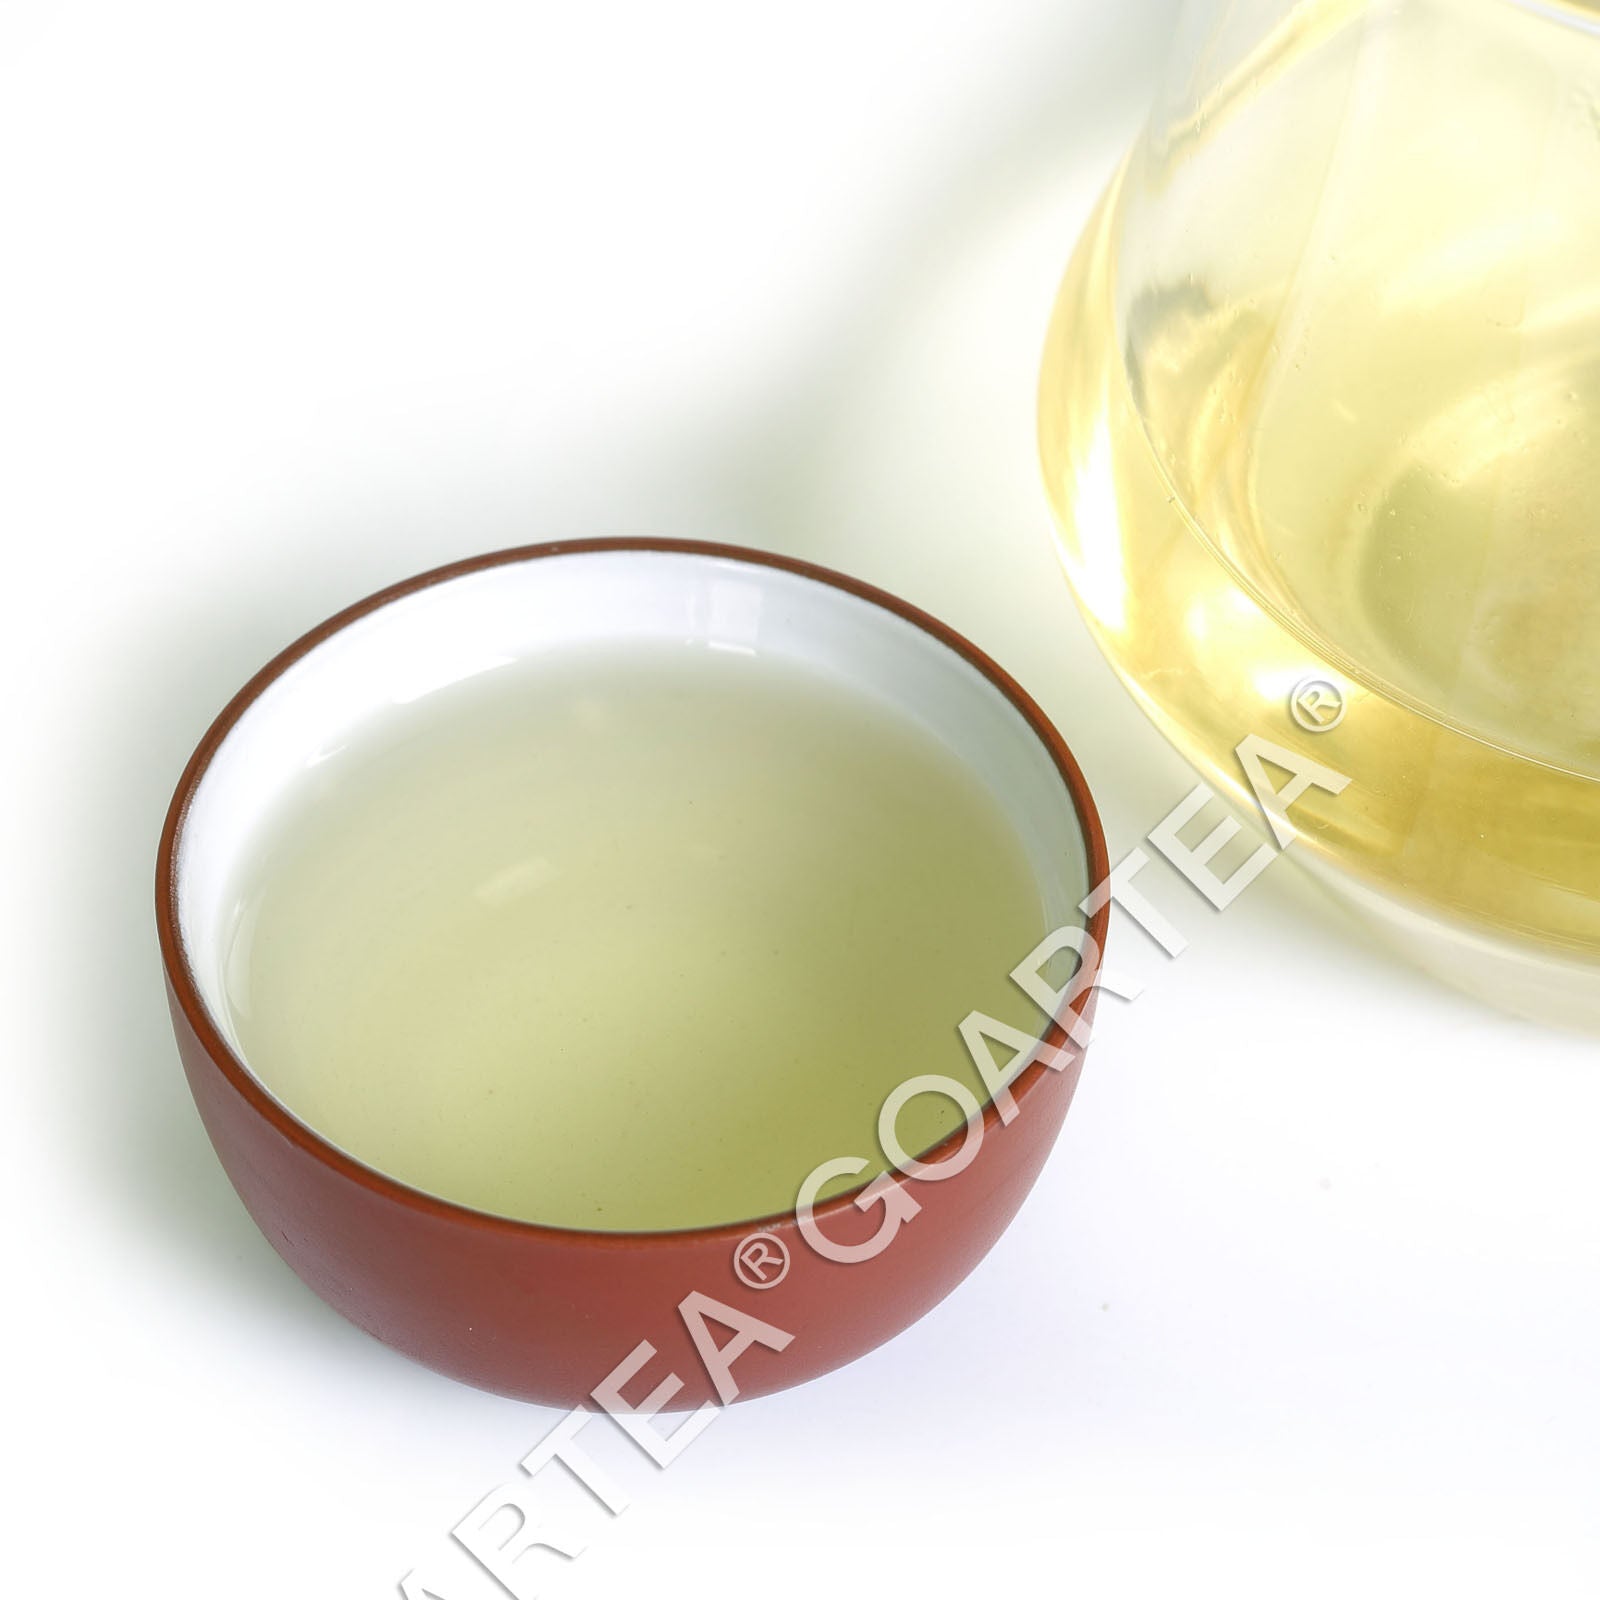 HelloYoung HELLOYOUNG 250g Nonpareil Supreme Biluochun Green Tea Spring Snail PiloChun